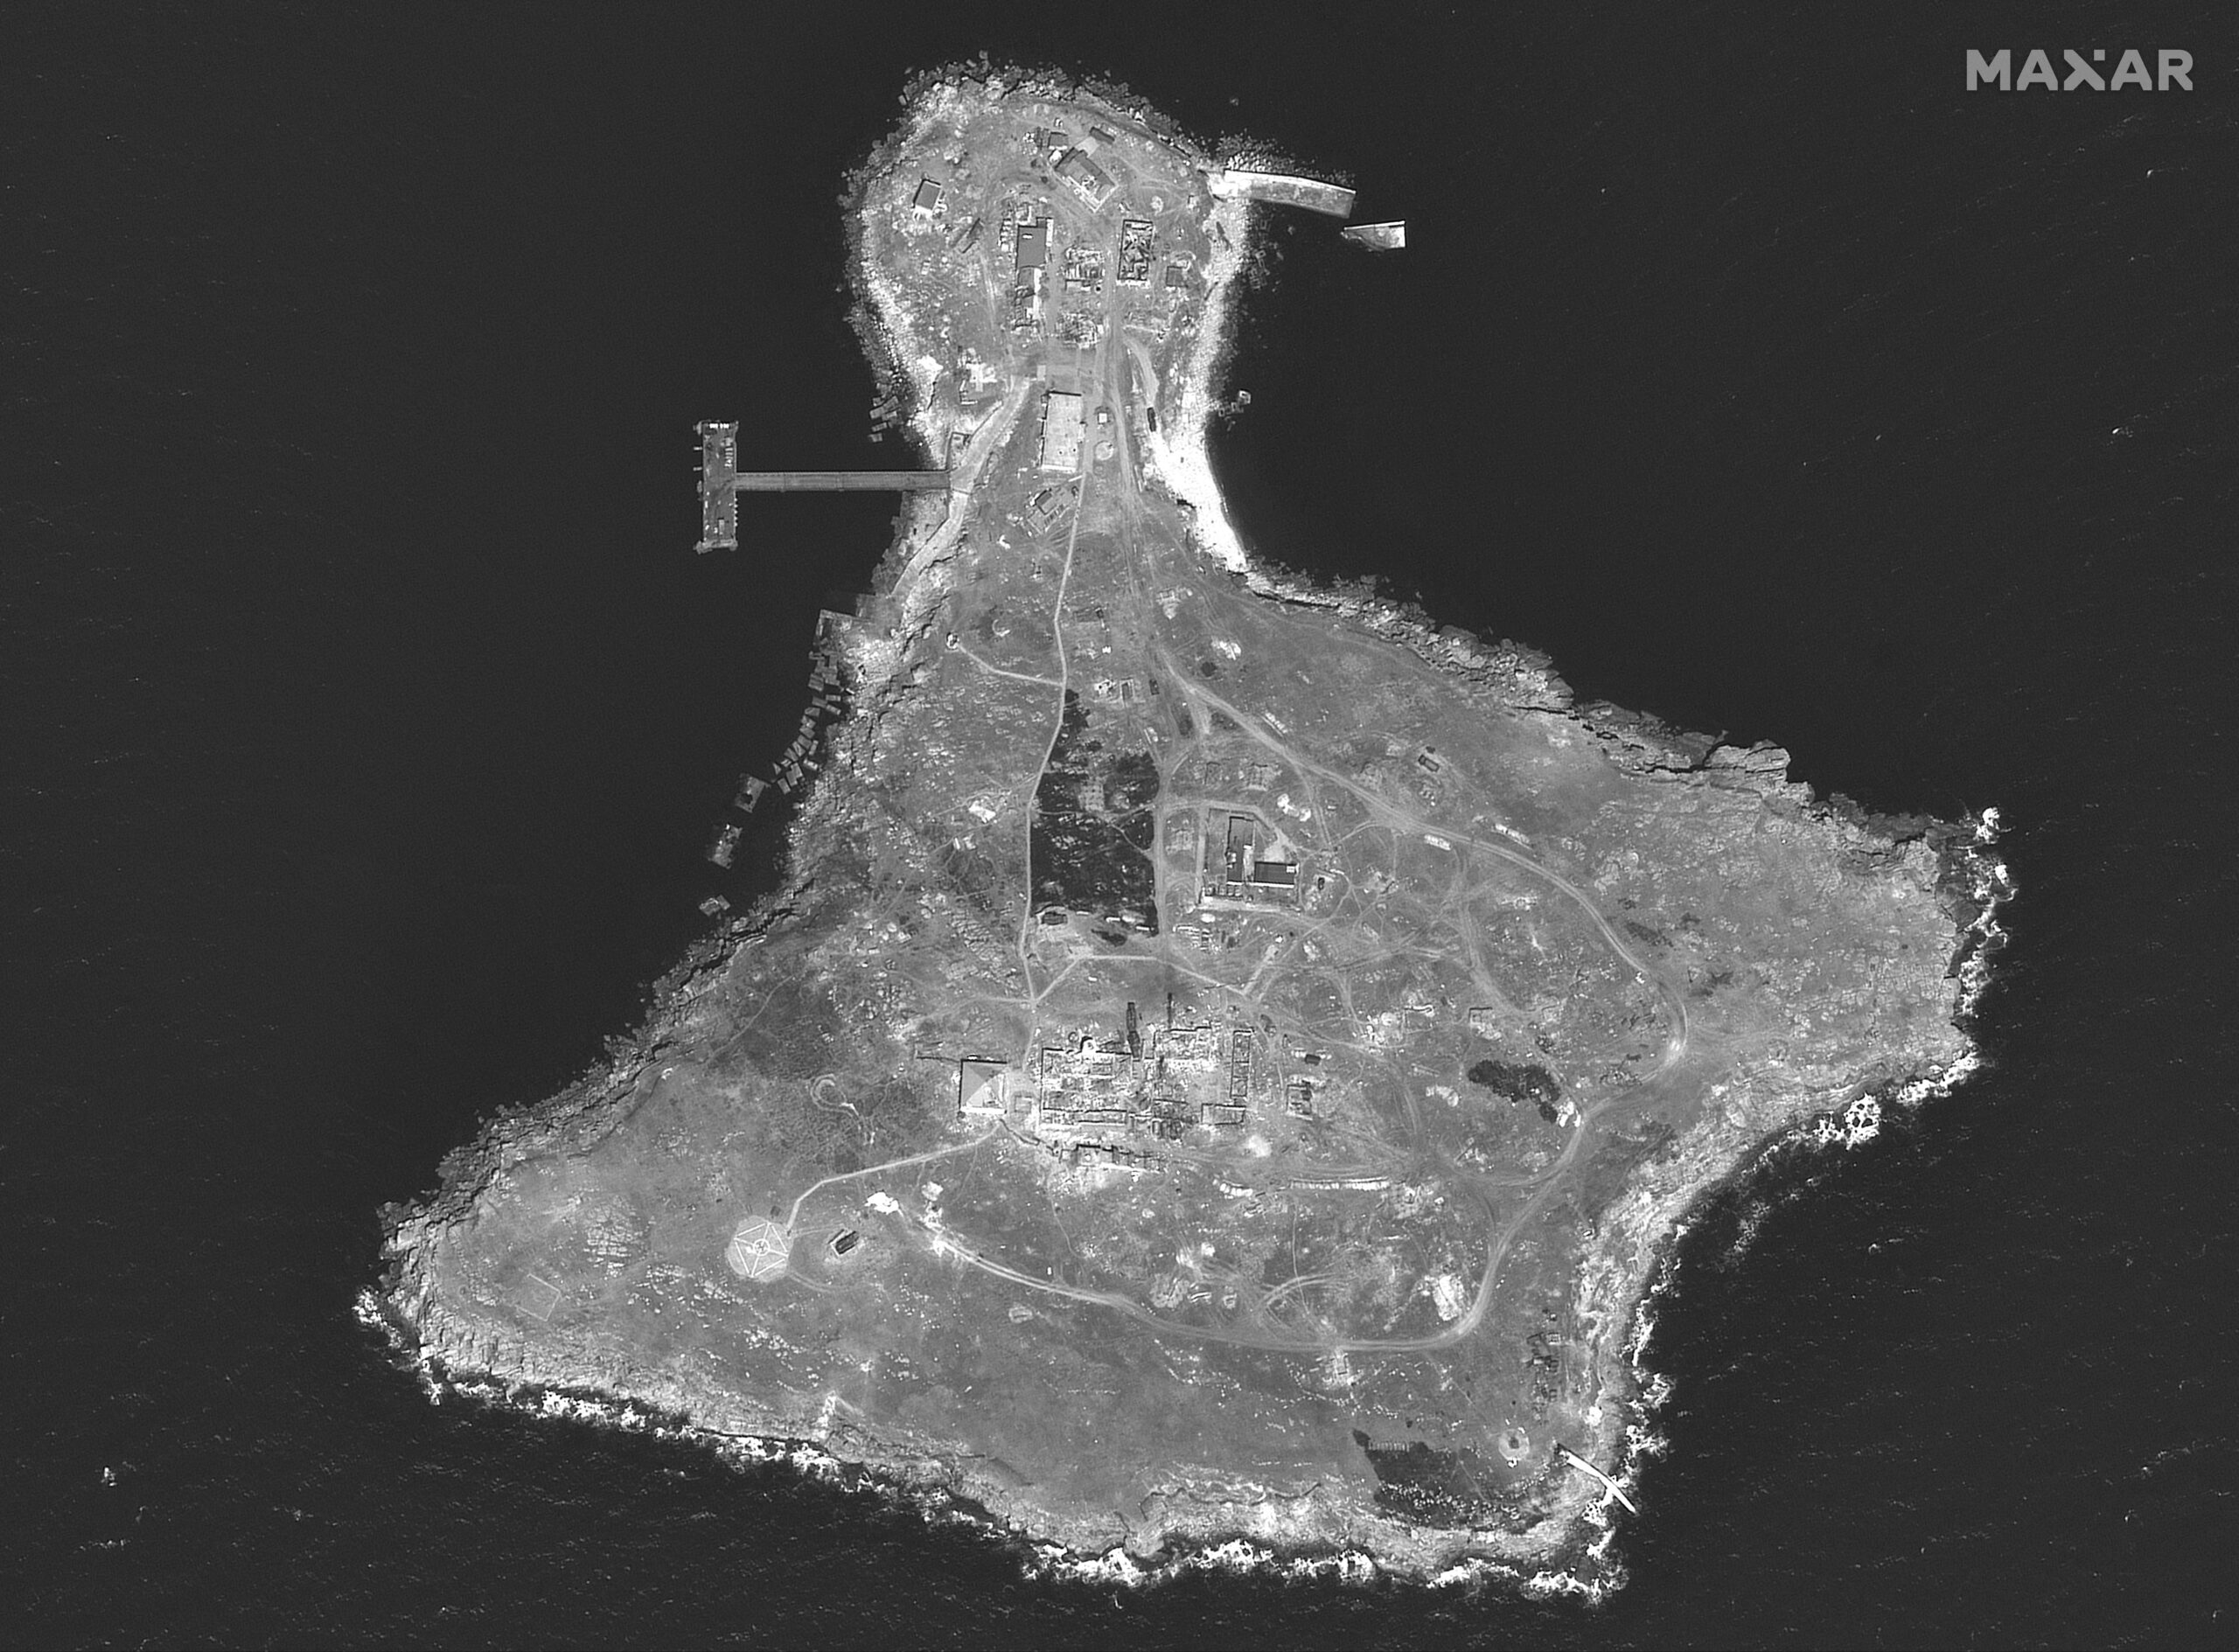 Спутниковый снимок острова Змеиный. Фото Maxar Technologies/Handout via REUTERS/Scanpix/LETA